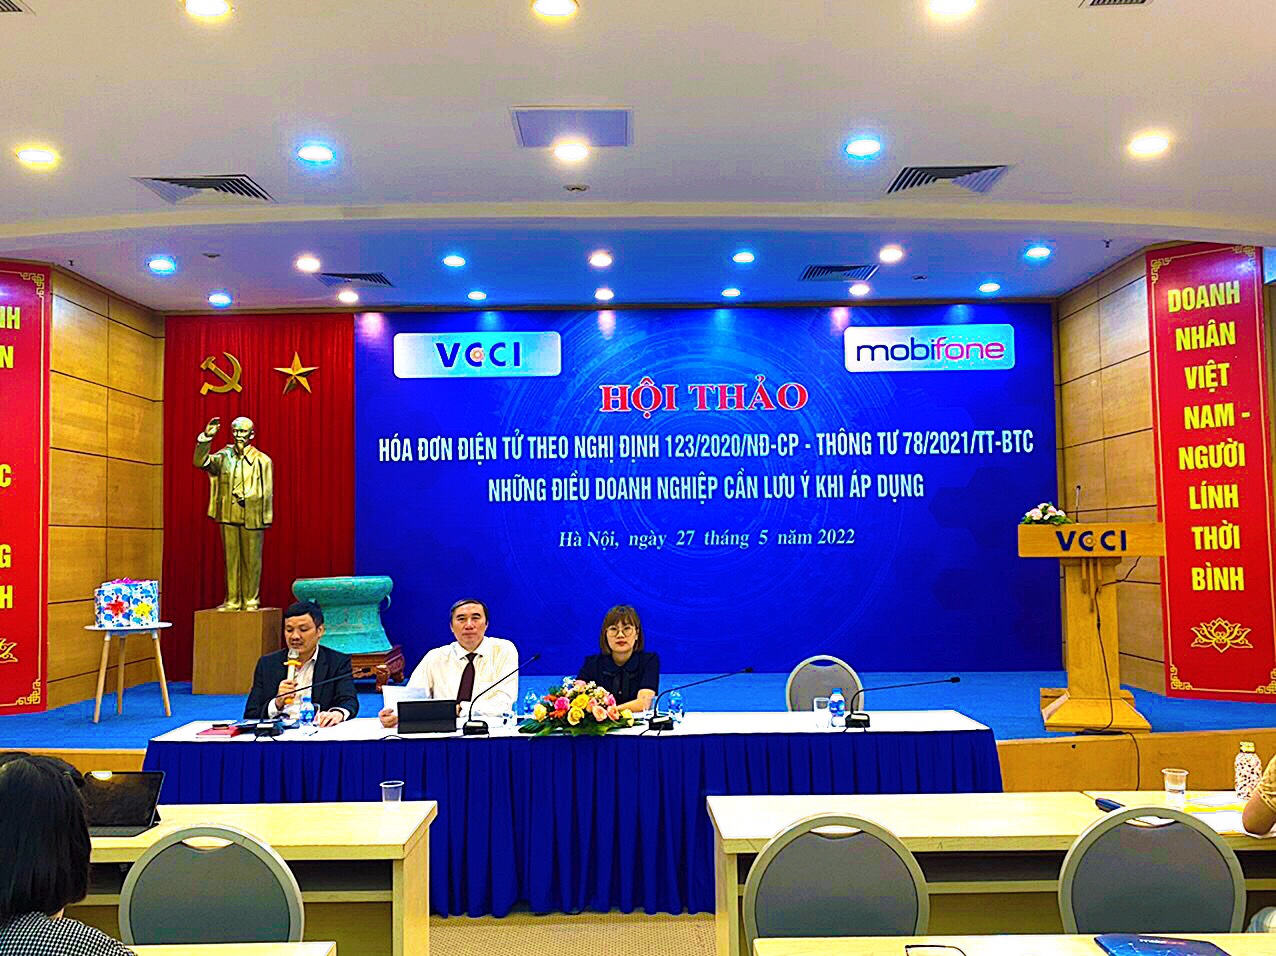 Ông Nguyễn Văn Phụng, Vụ trưởng quản lý thuế doanh nghiệp lớn của Tổng cục Thuế (giữa) phát biểu tại hội thảo.